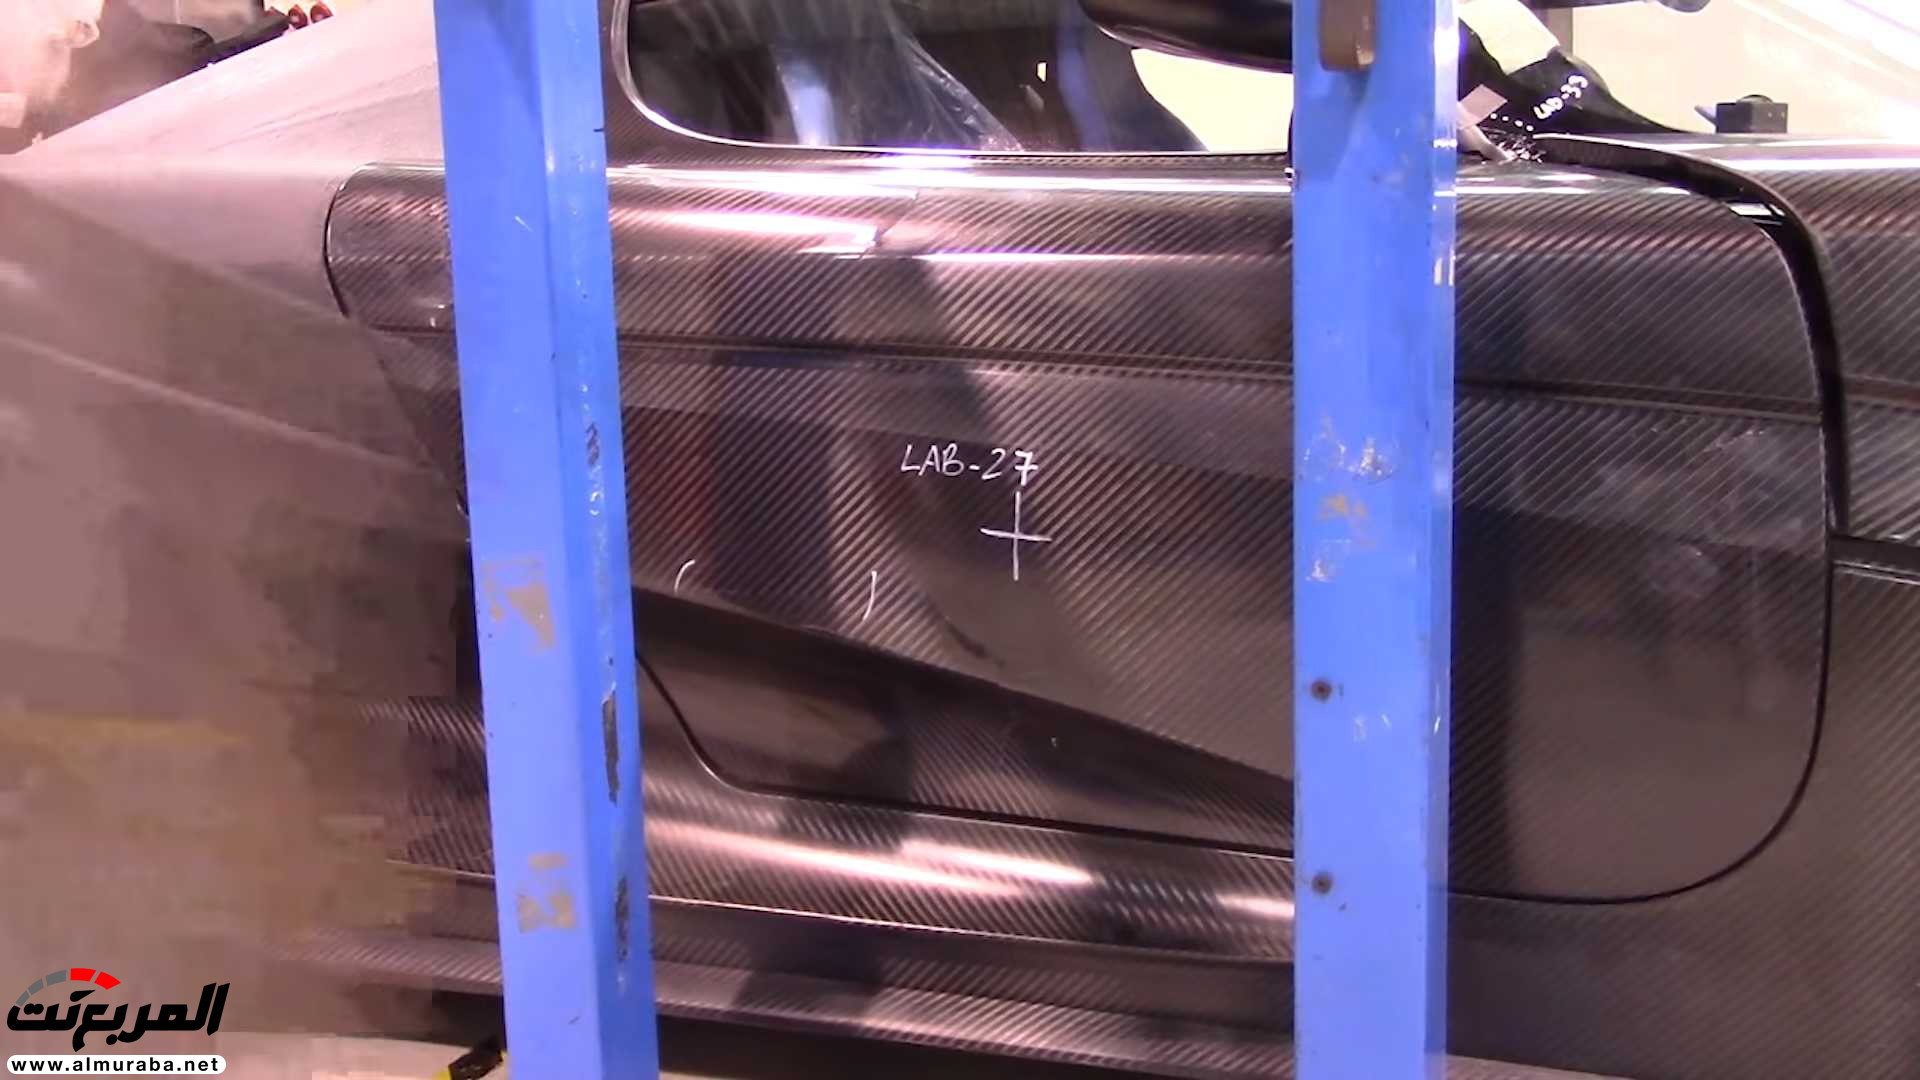 "بالفيديو" اختبار تصادم سيارة كوينيجسيج بقيمة 7.5 مليون ريال! 31